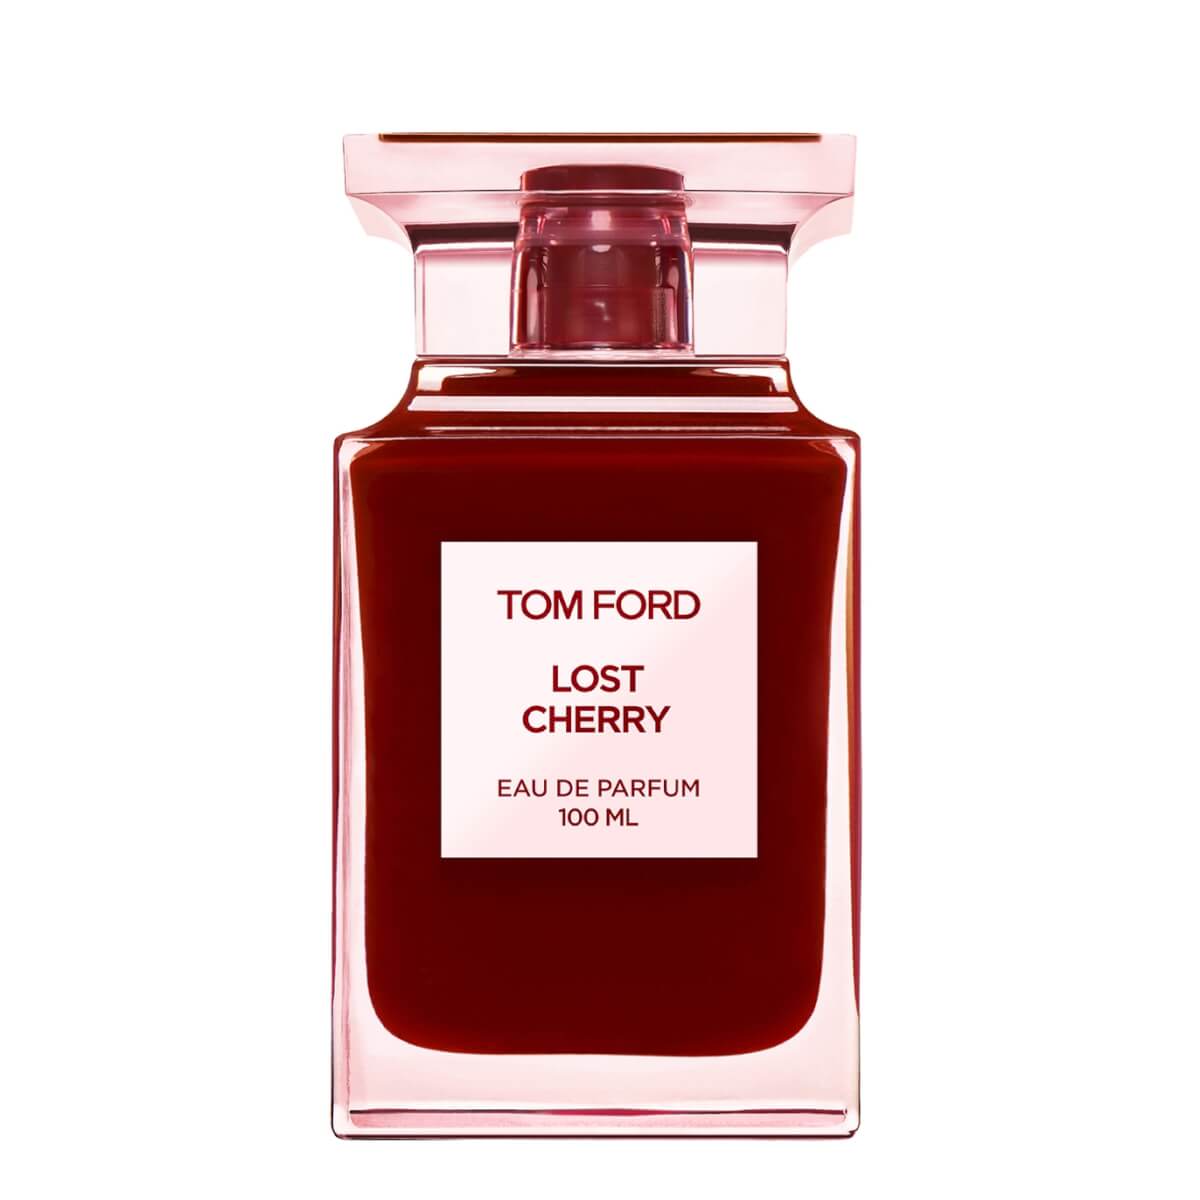 Tom Ford Lost Cherry Eau de Parfum Spray 100ml, Fragrance, Floral